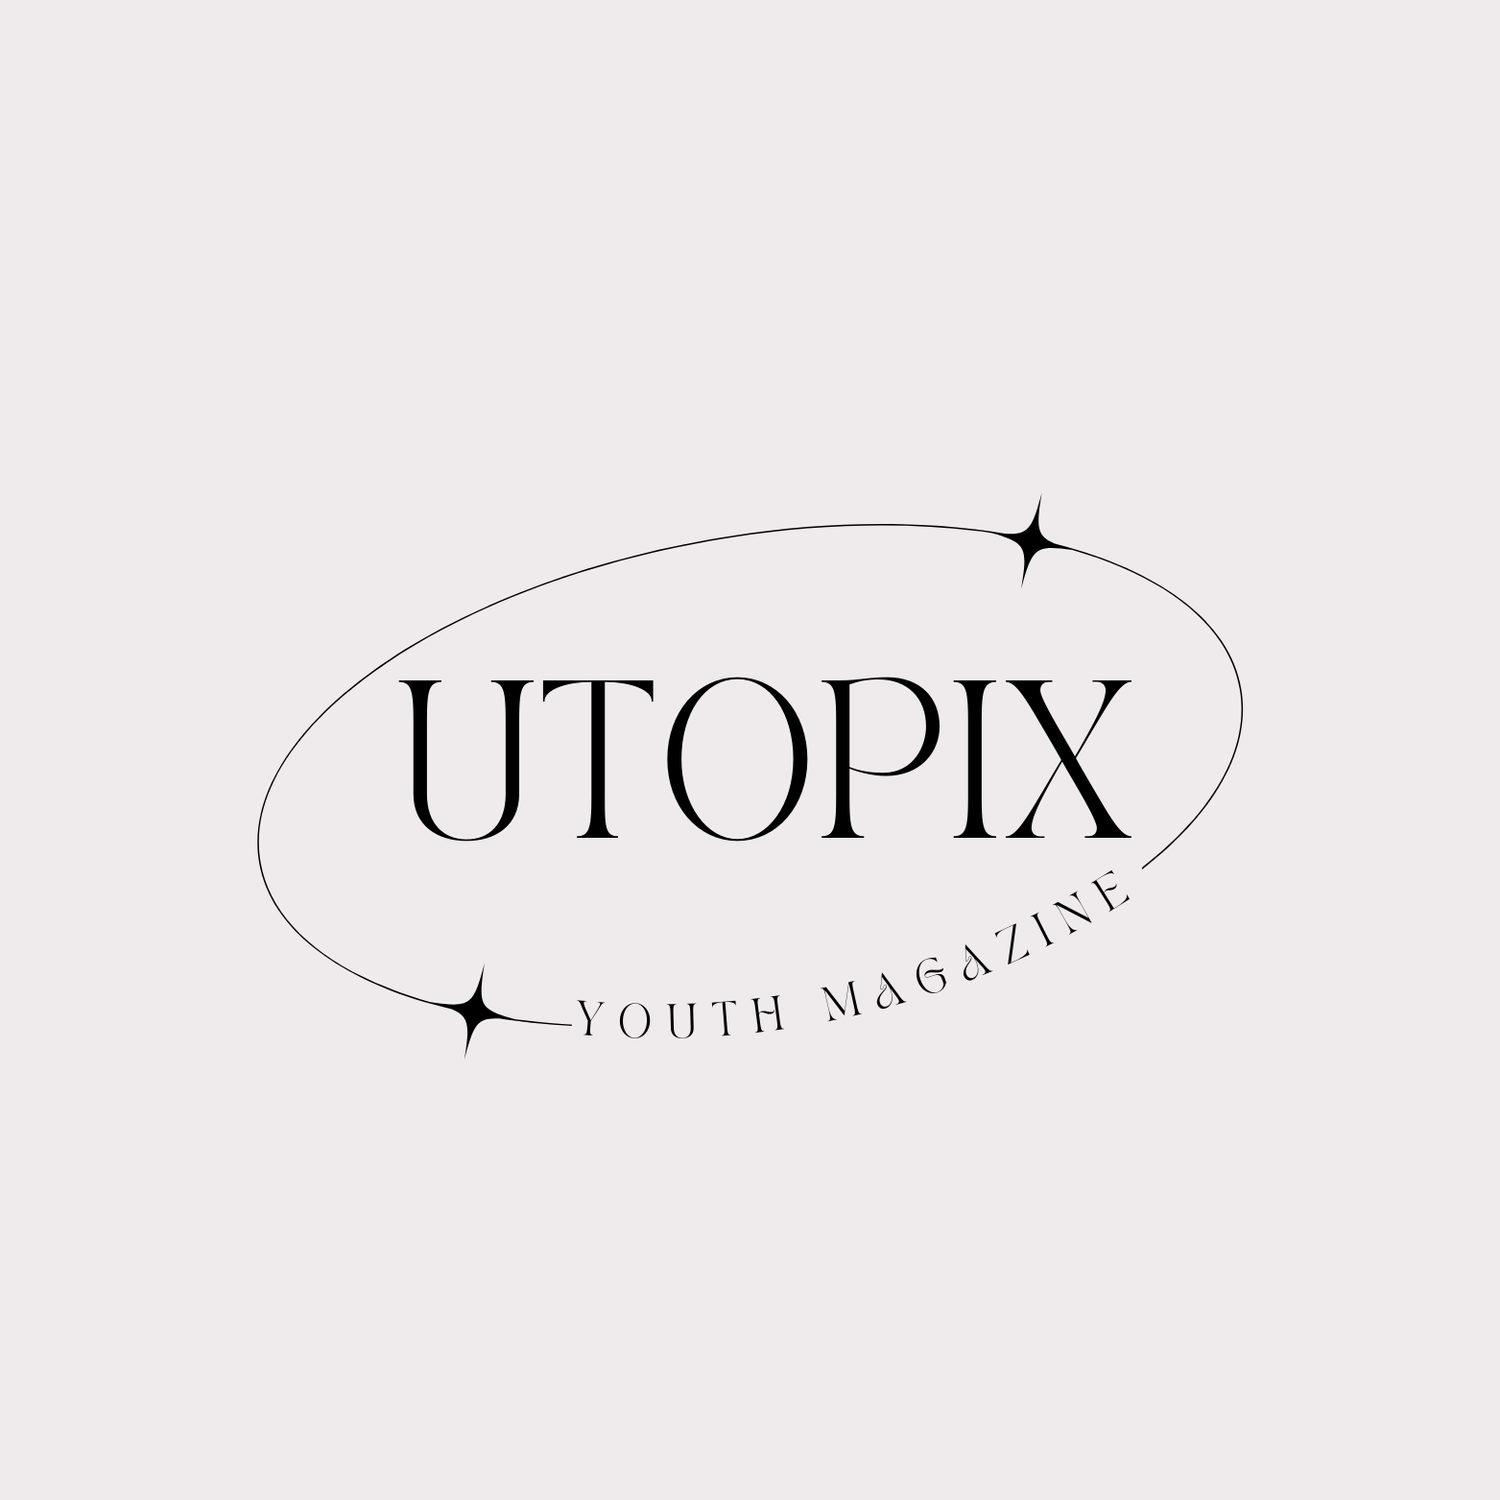 Utopix